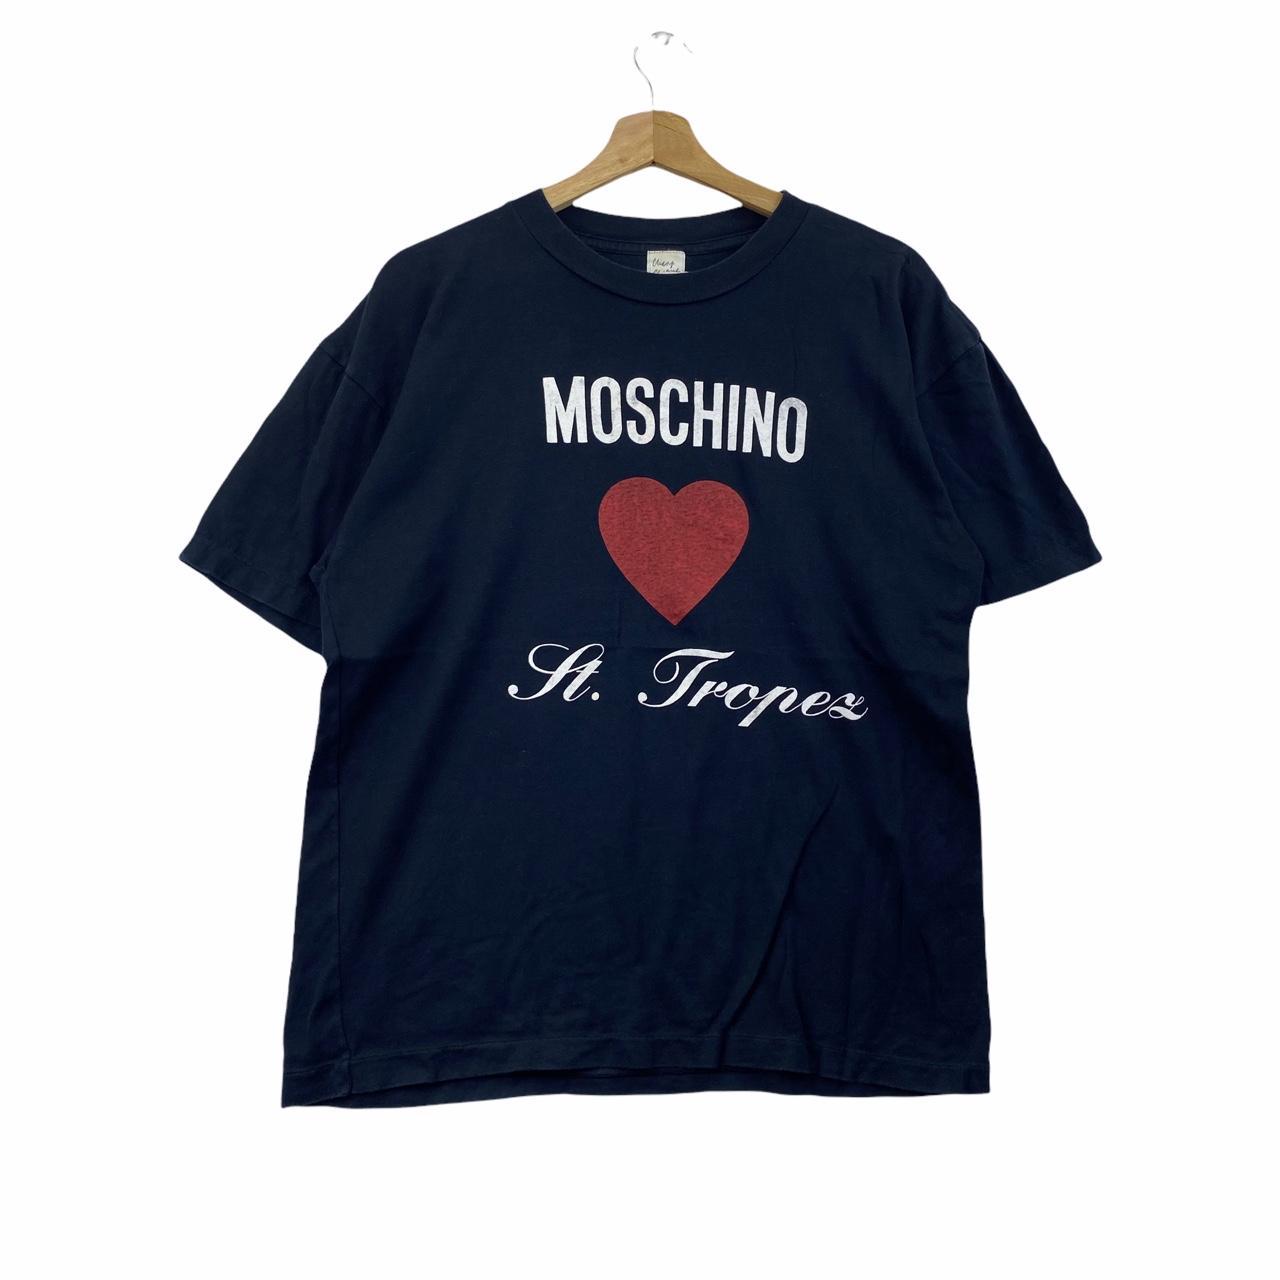 Moschino Women's Navy T-shirt | Depop